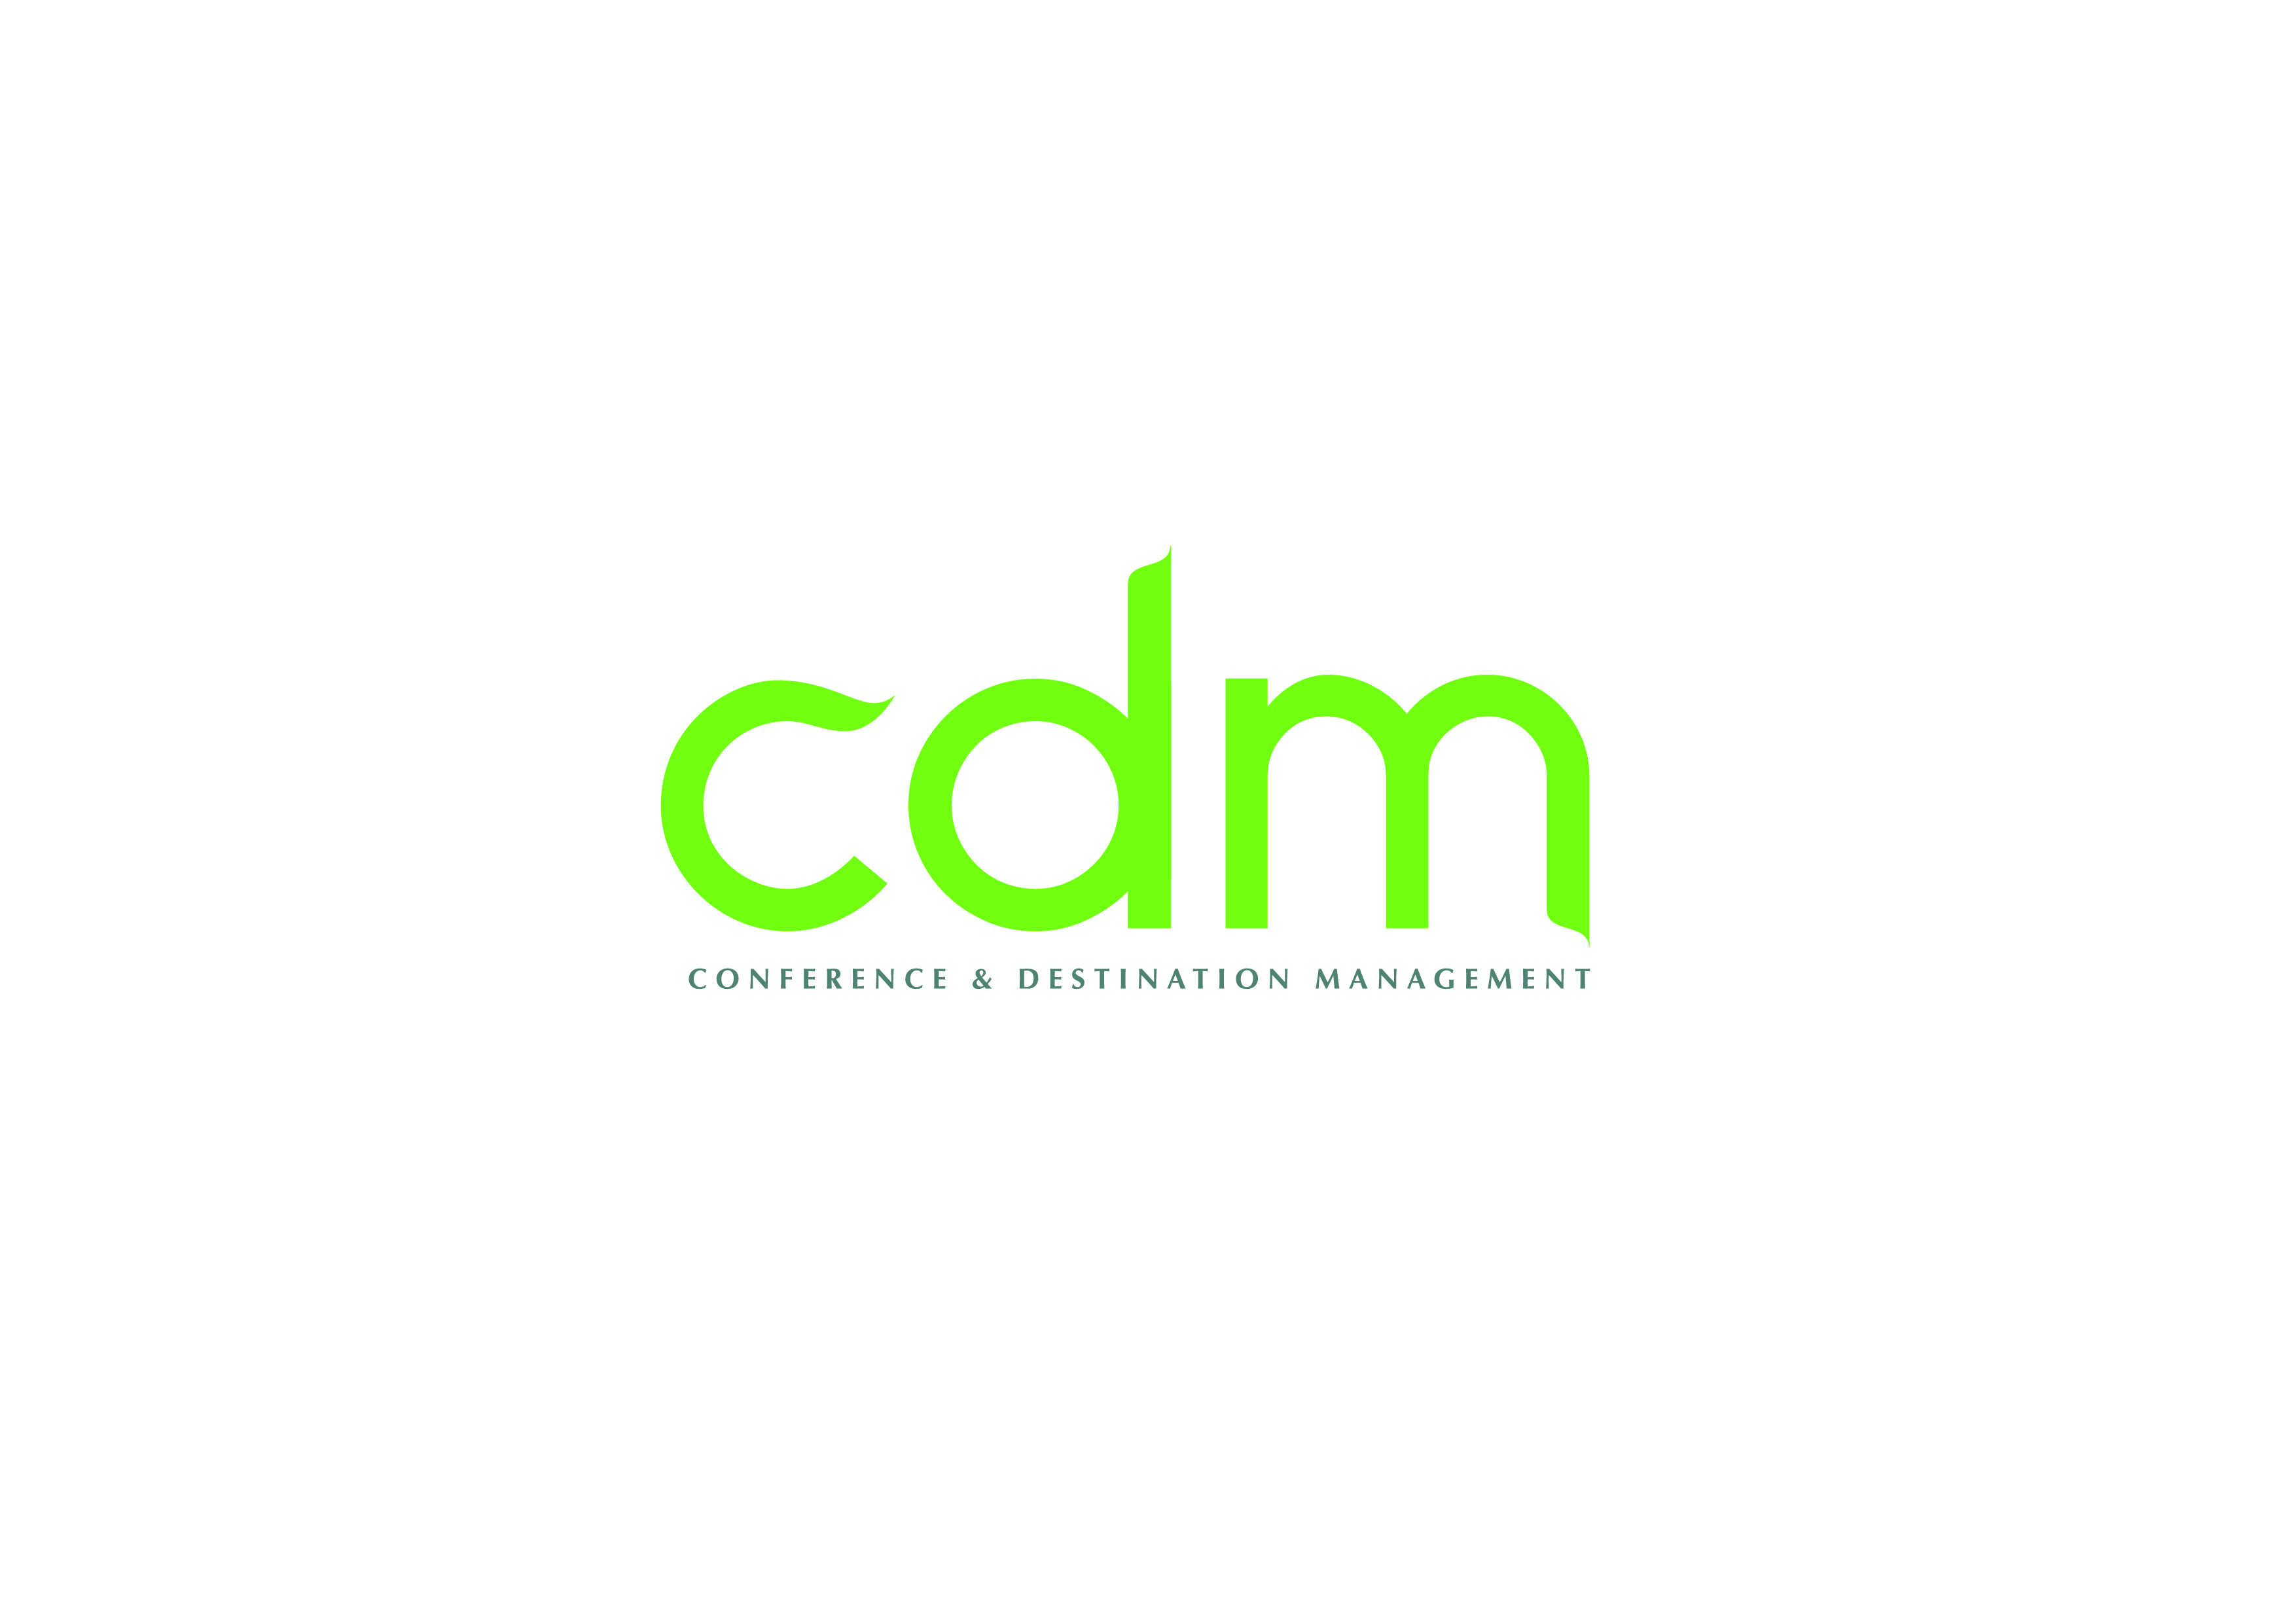 CDM-Conference & Destination Management